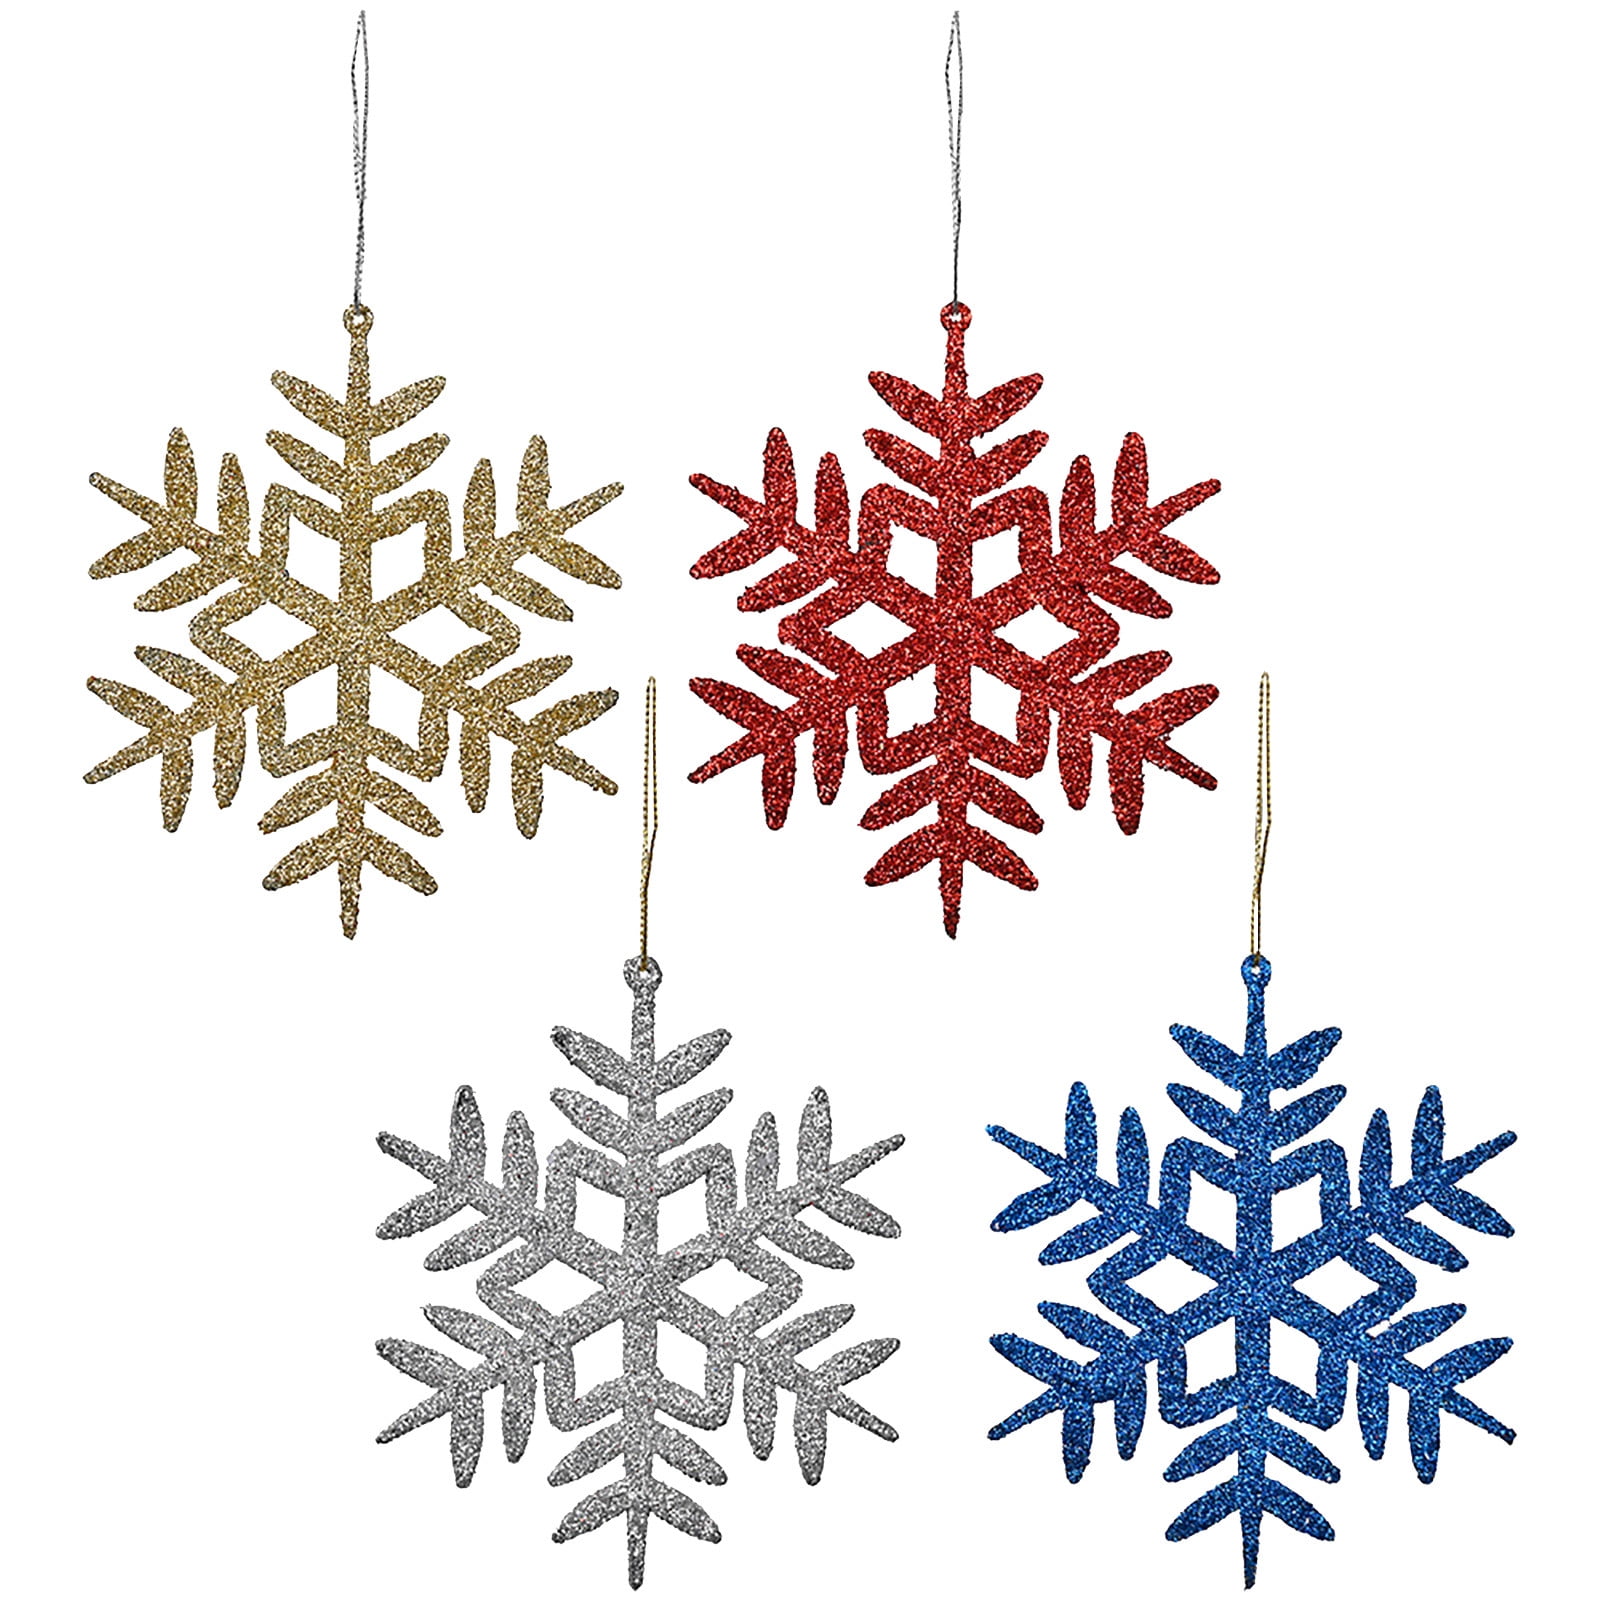 Details about   30PCS Snowflakes Hanging Decoration Christmas Party Pendant Xmas Ornaments Large 